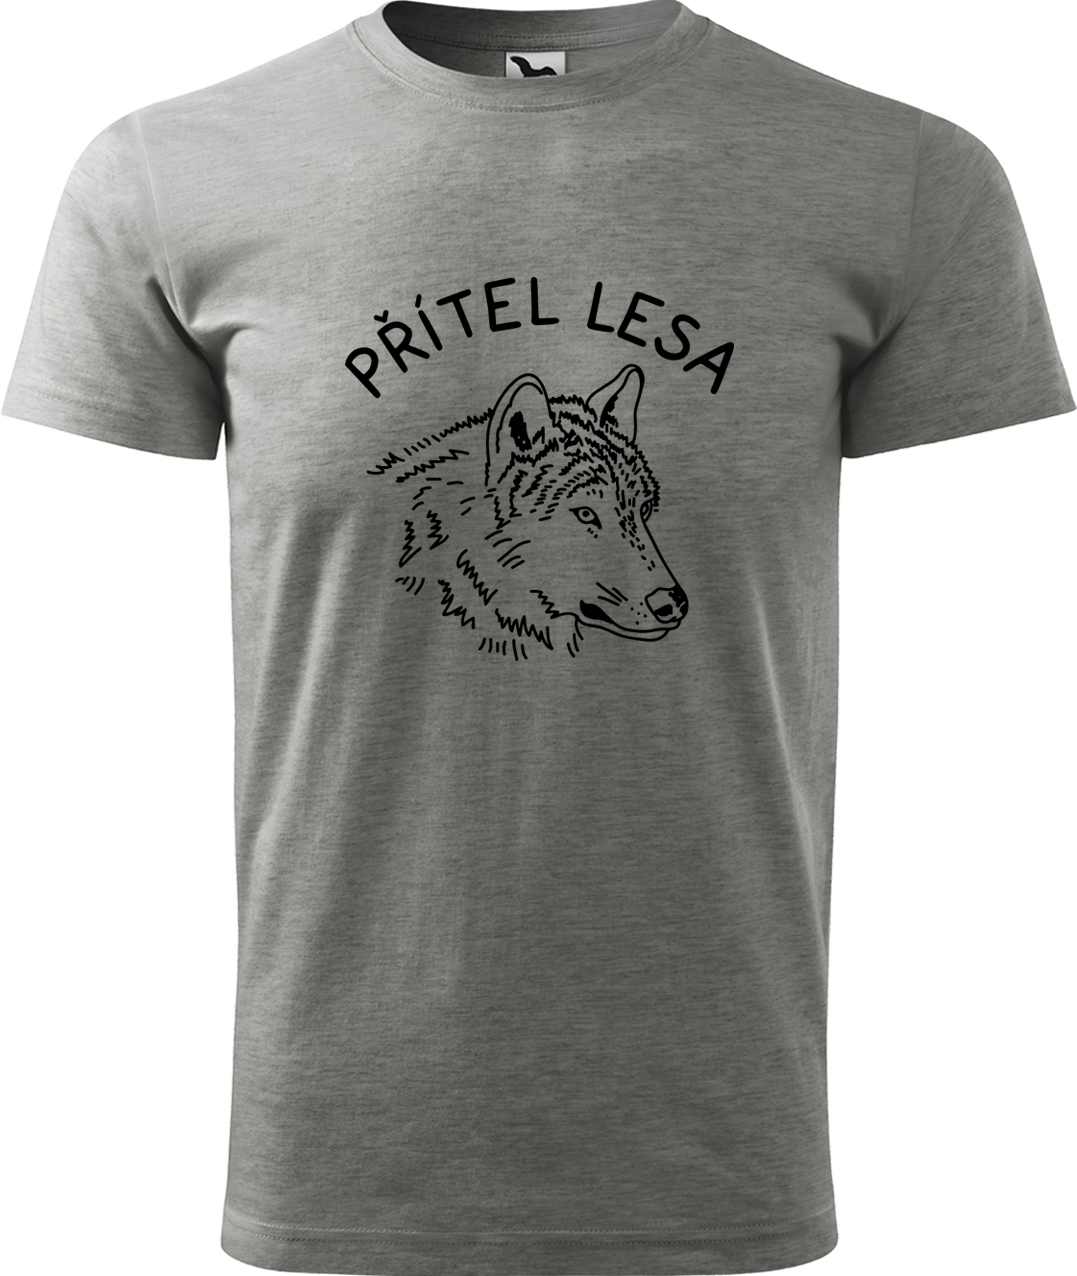 Pánské tričko s vlkem - Přítel lesa Velikost: 3XL, Barva: Tmavě šedý melír (12), Střih: pánský